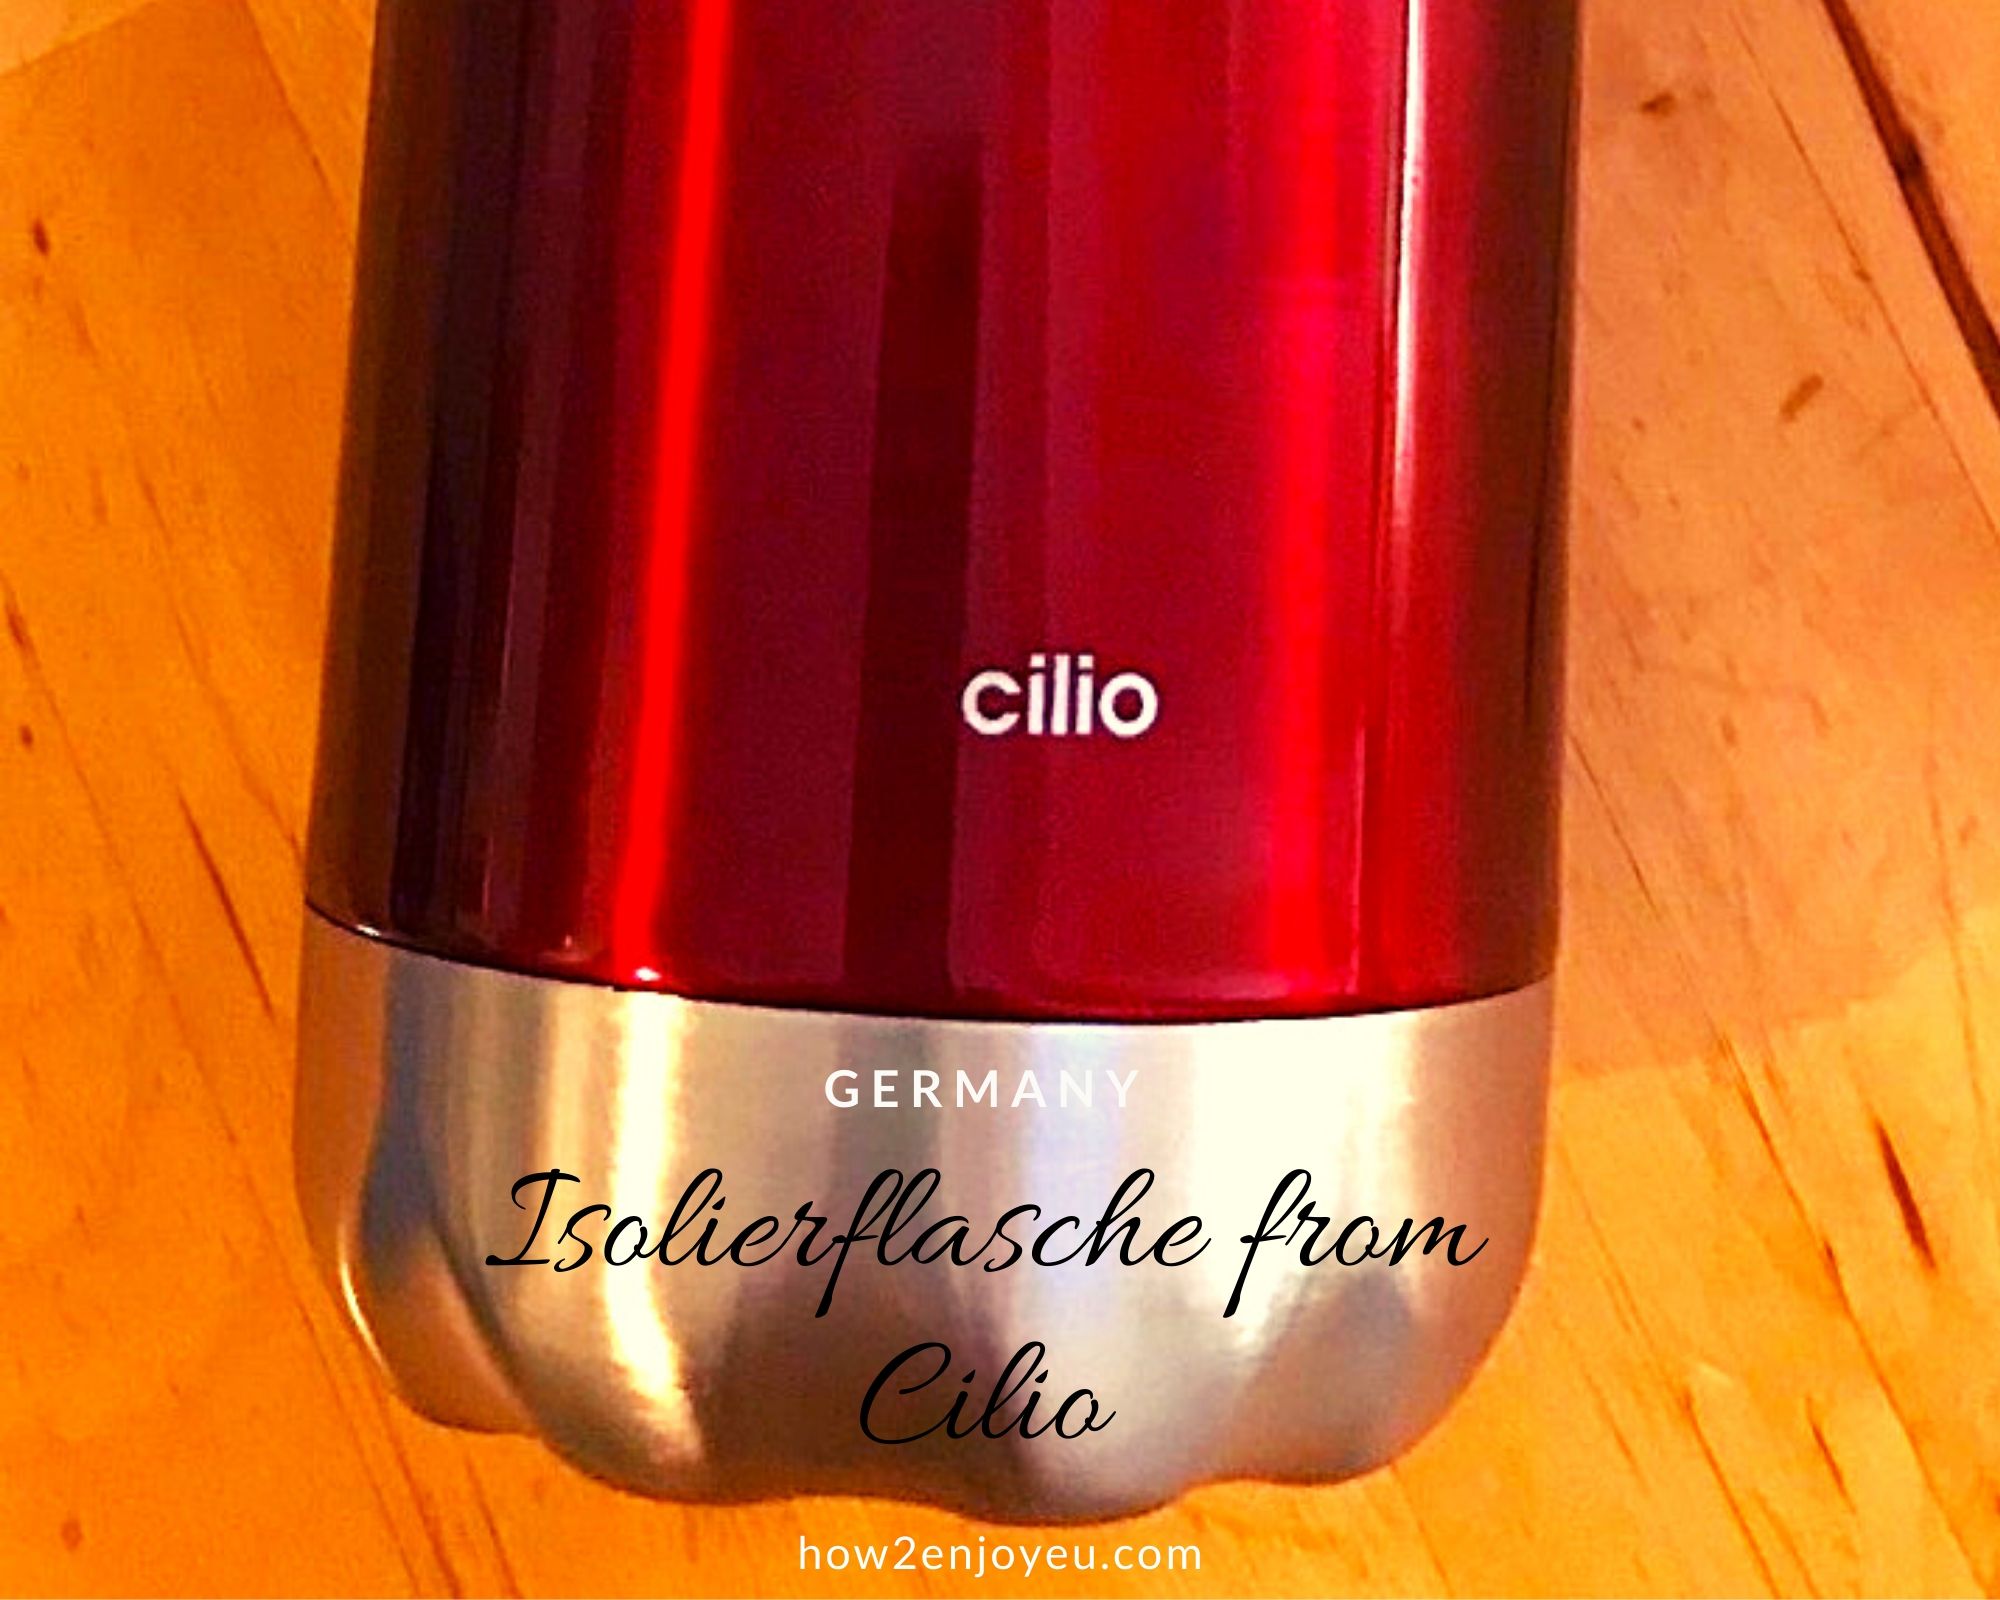 You are currently viewing ドイツの赤い水筒「Cilio」、見せてもらおうか、ゾーリンゲンの水筒の性能とやらを